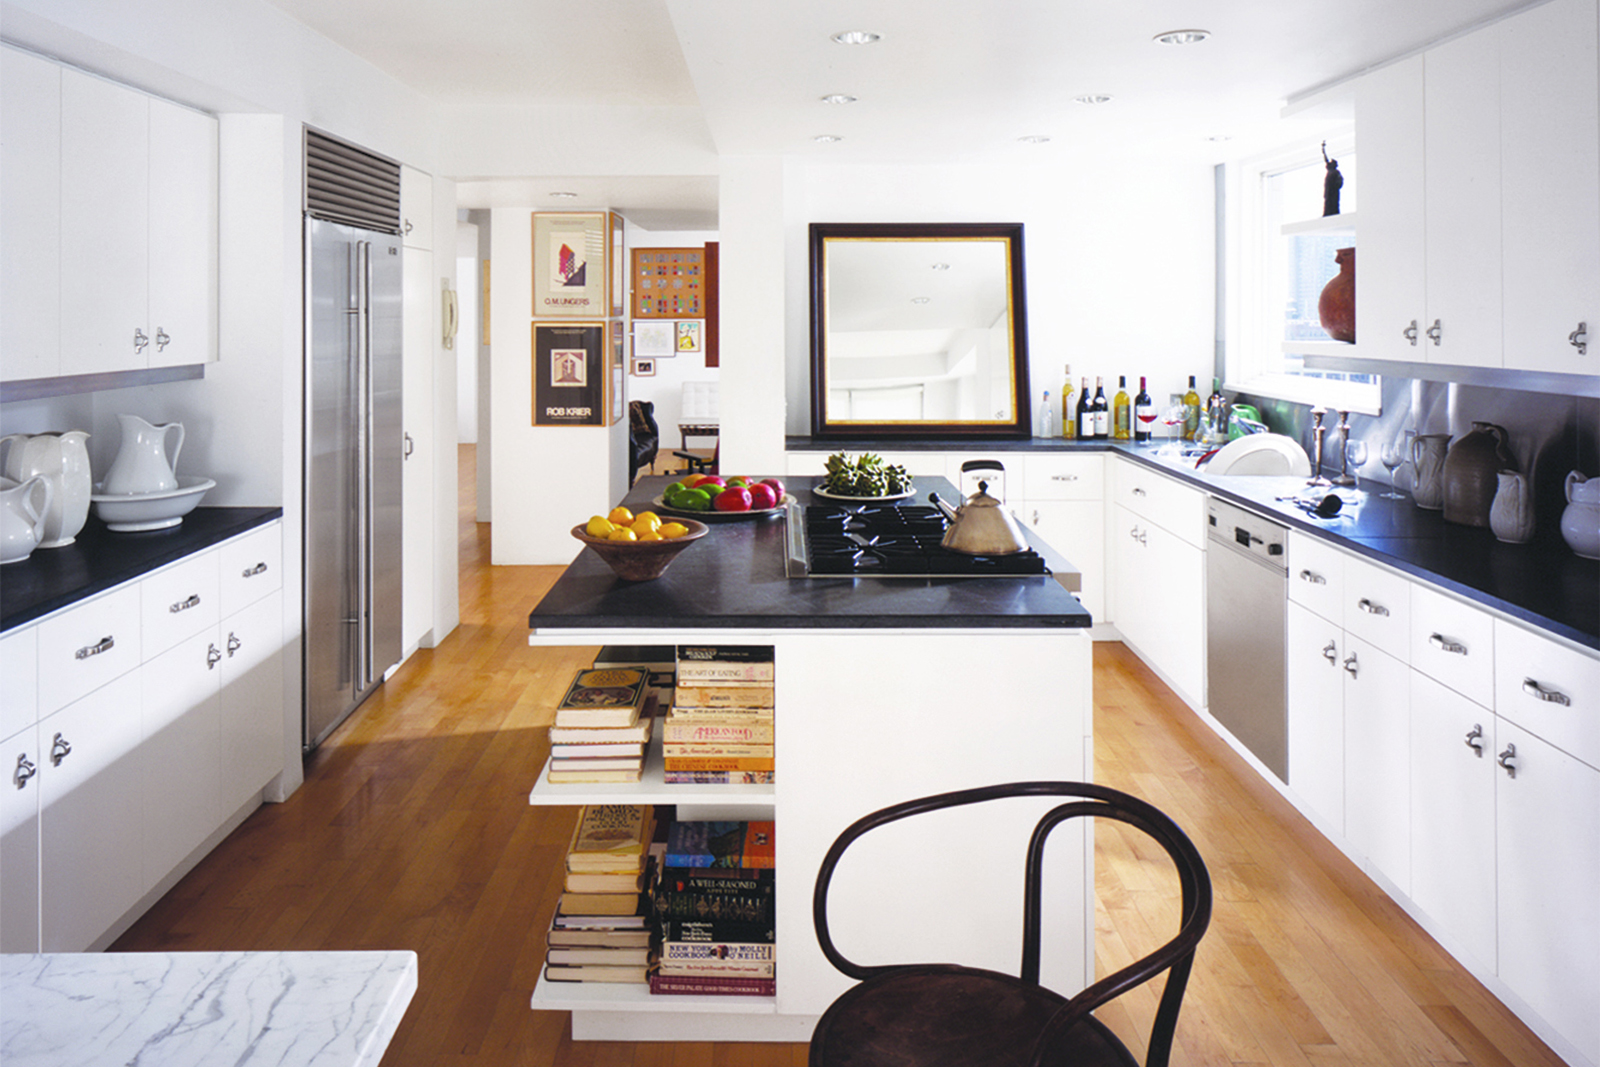 06-res4-resolution-4-architecture-modern-residential-eisenman-davidson-apartment-interior-kitchen.jpg